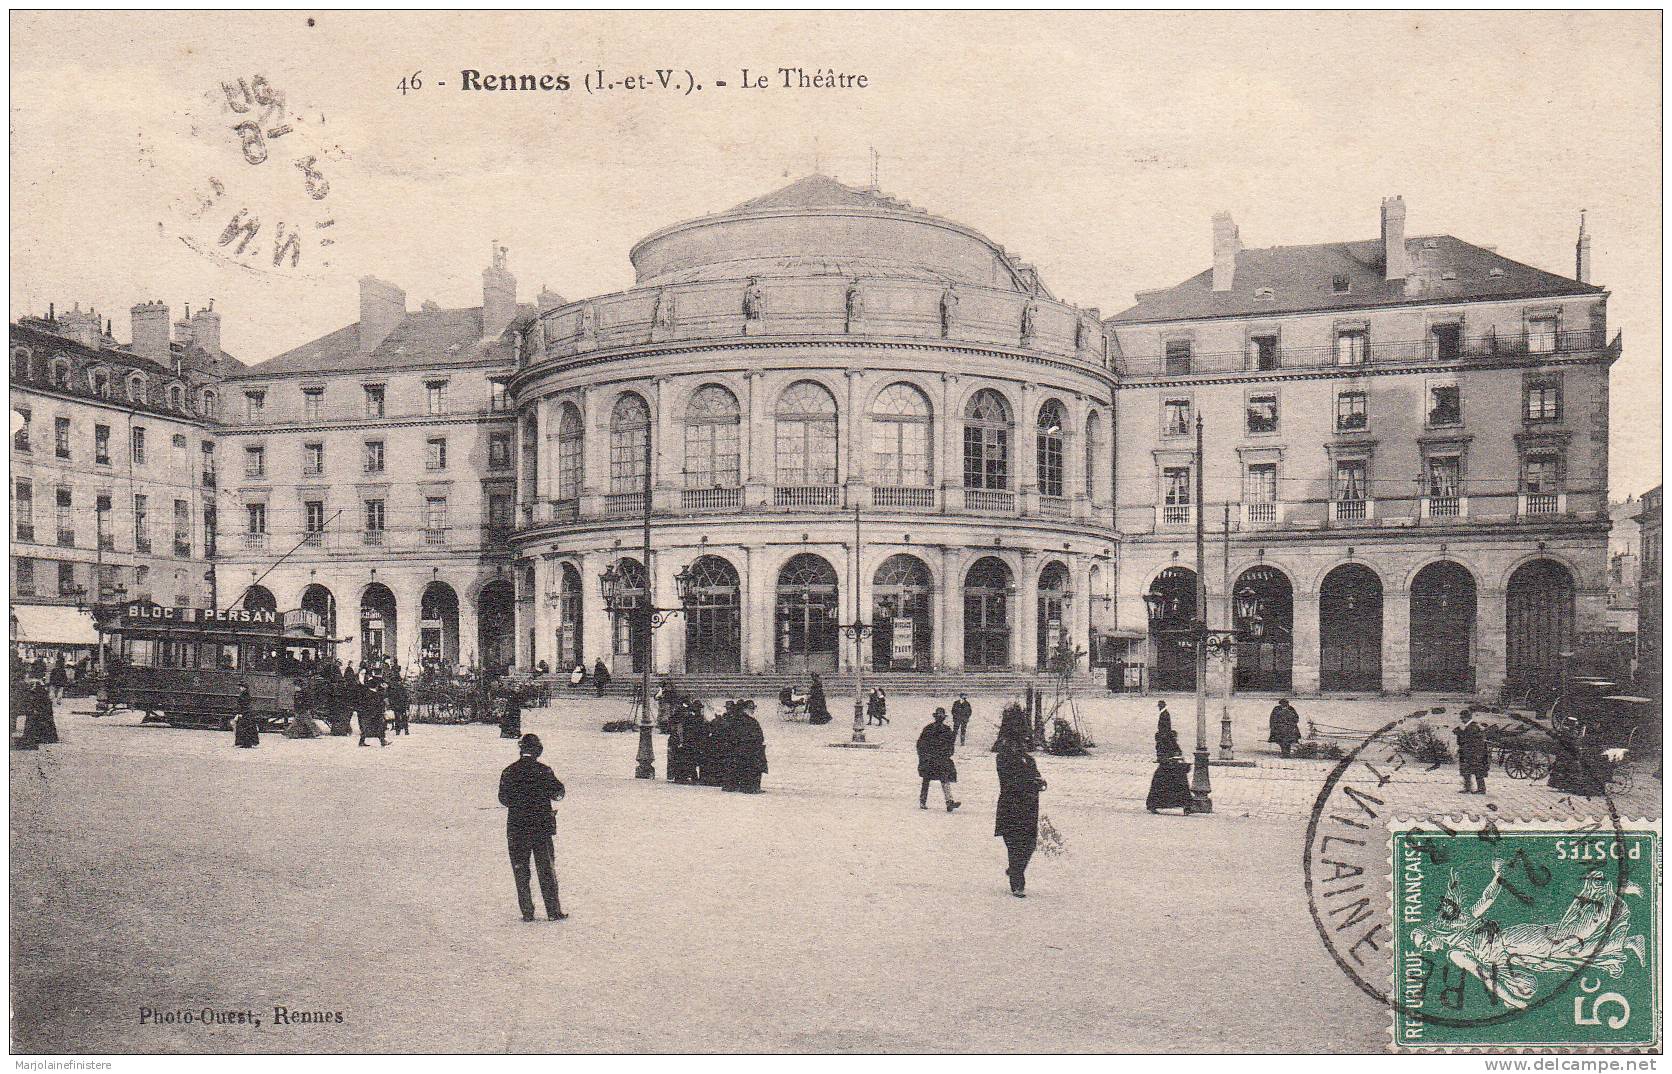 Dép. 35 - RENNES. - Le Théatre. Tramway Et Animation. Photo-Ouest, Rennes. N°46. 1913 - Rennes